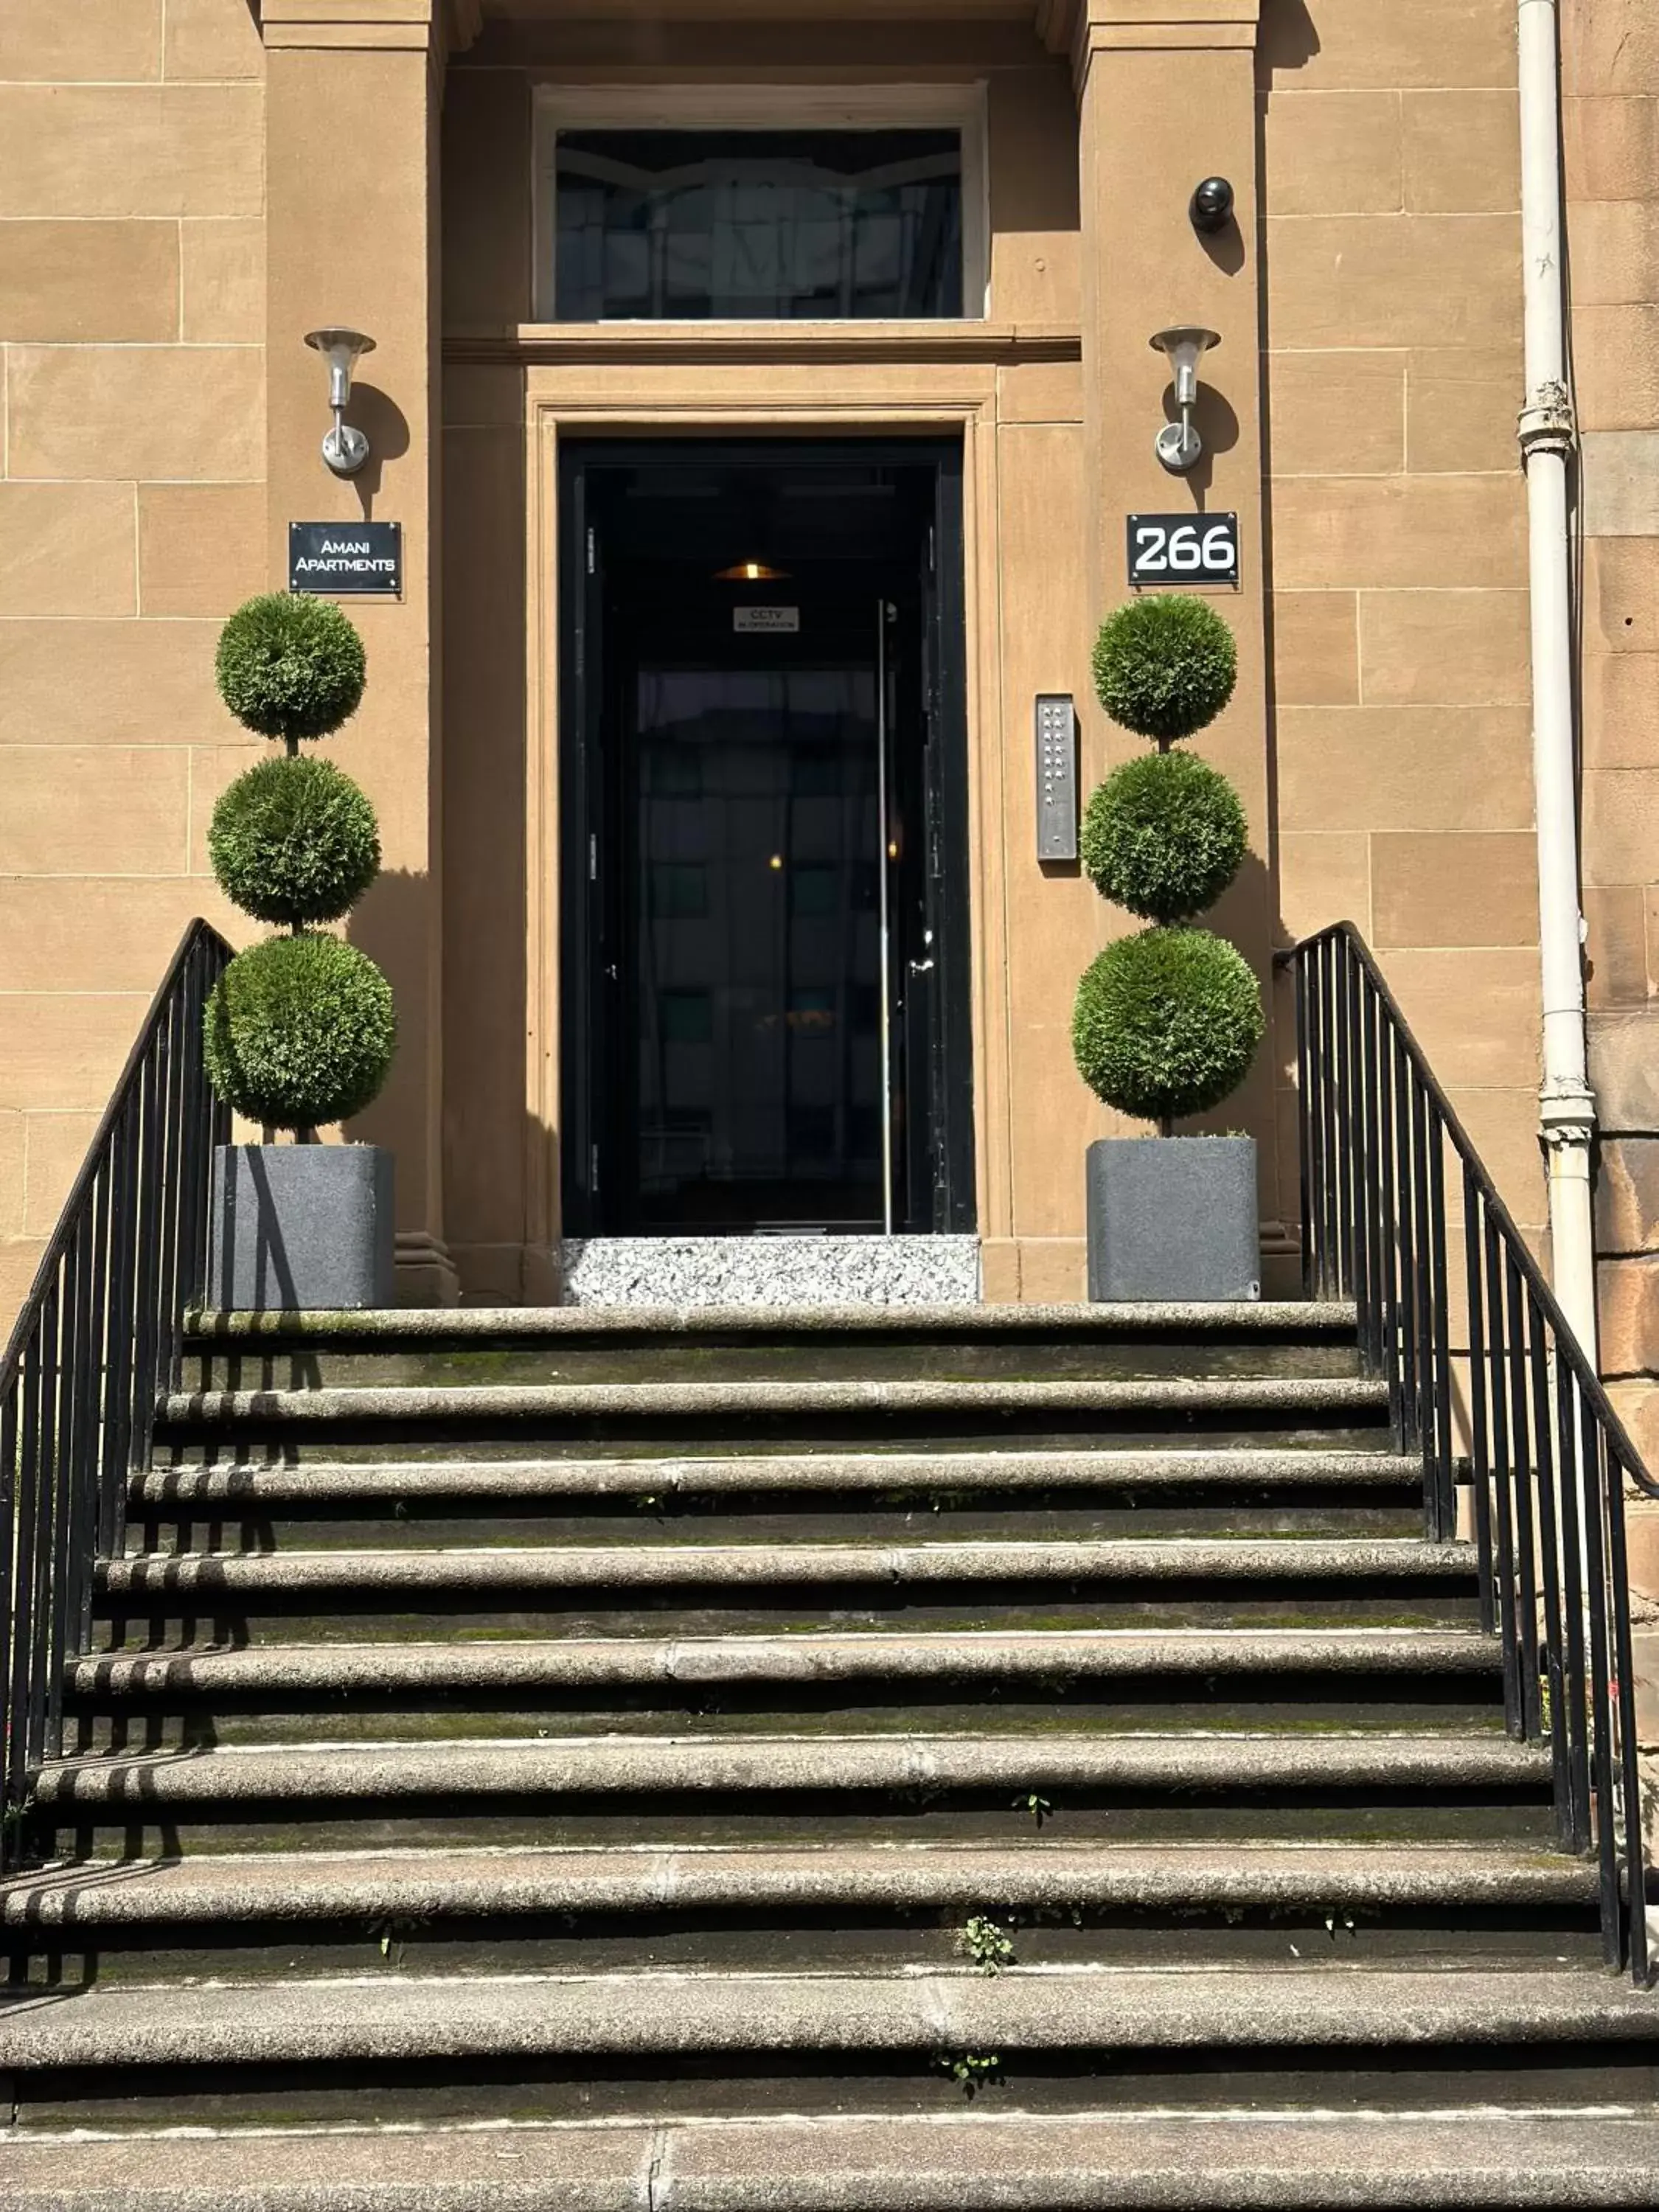 Facade/entrance in Amani Apartments - Glasgow City Centre